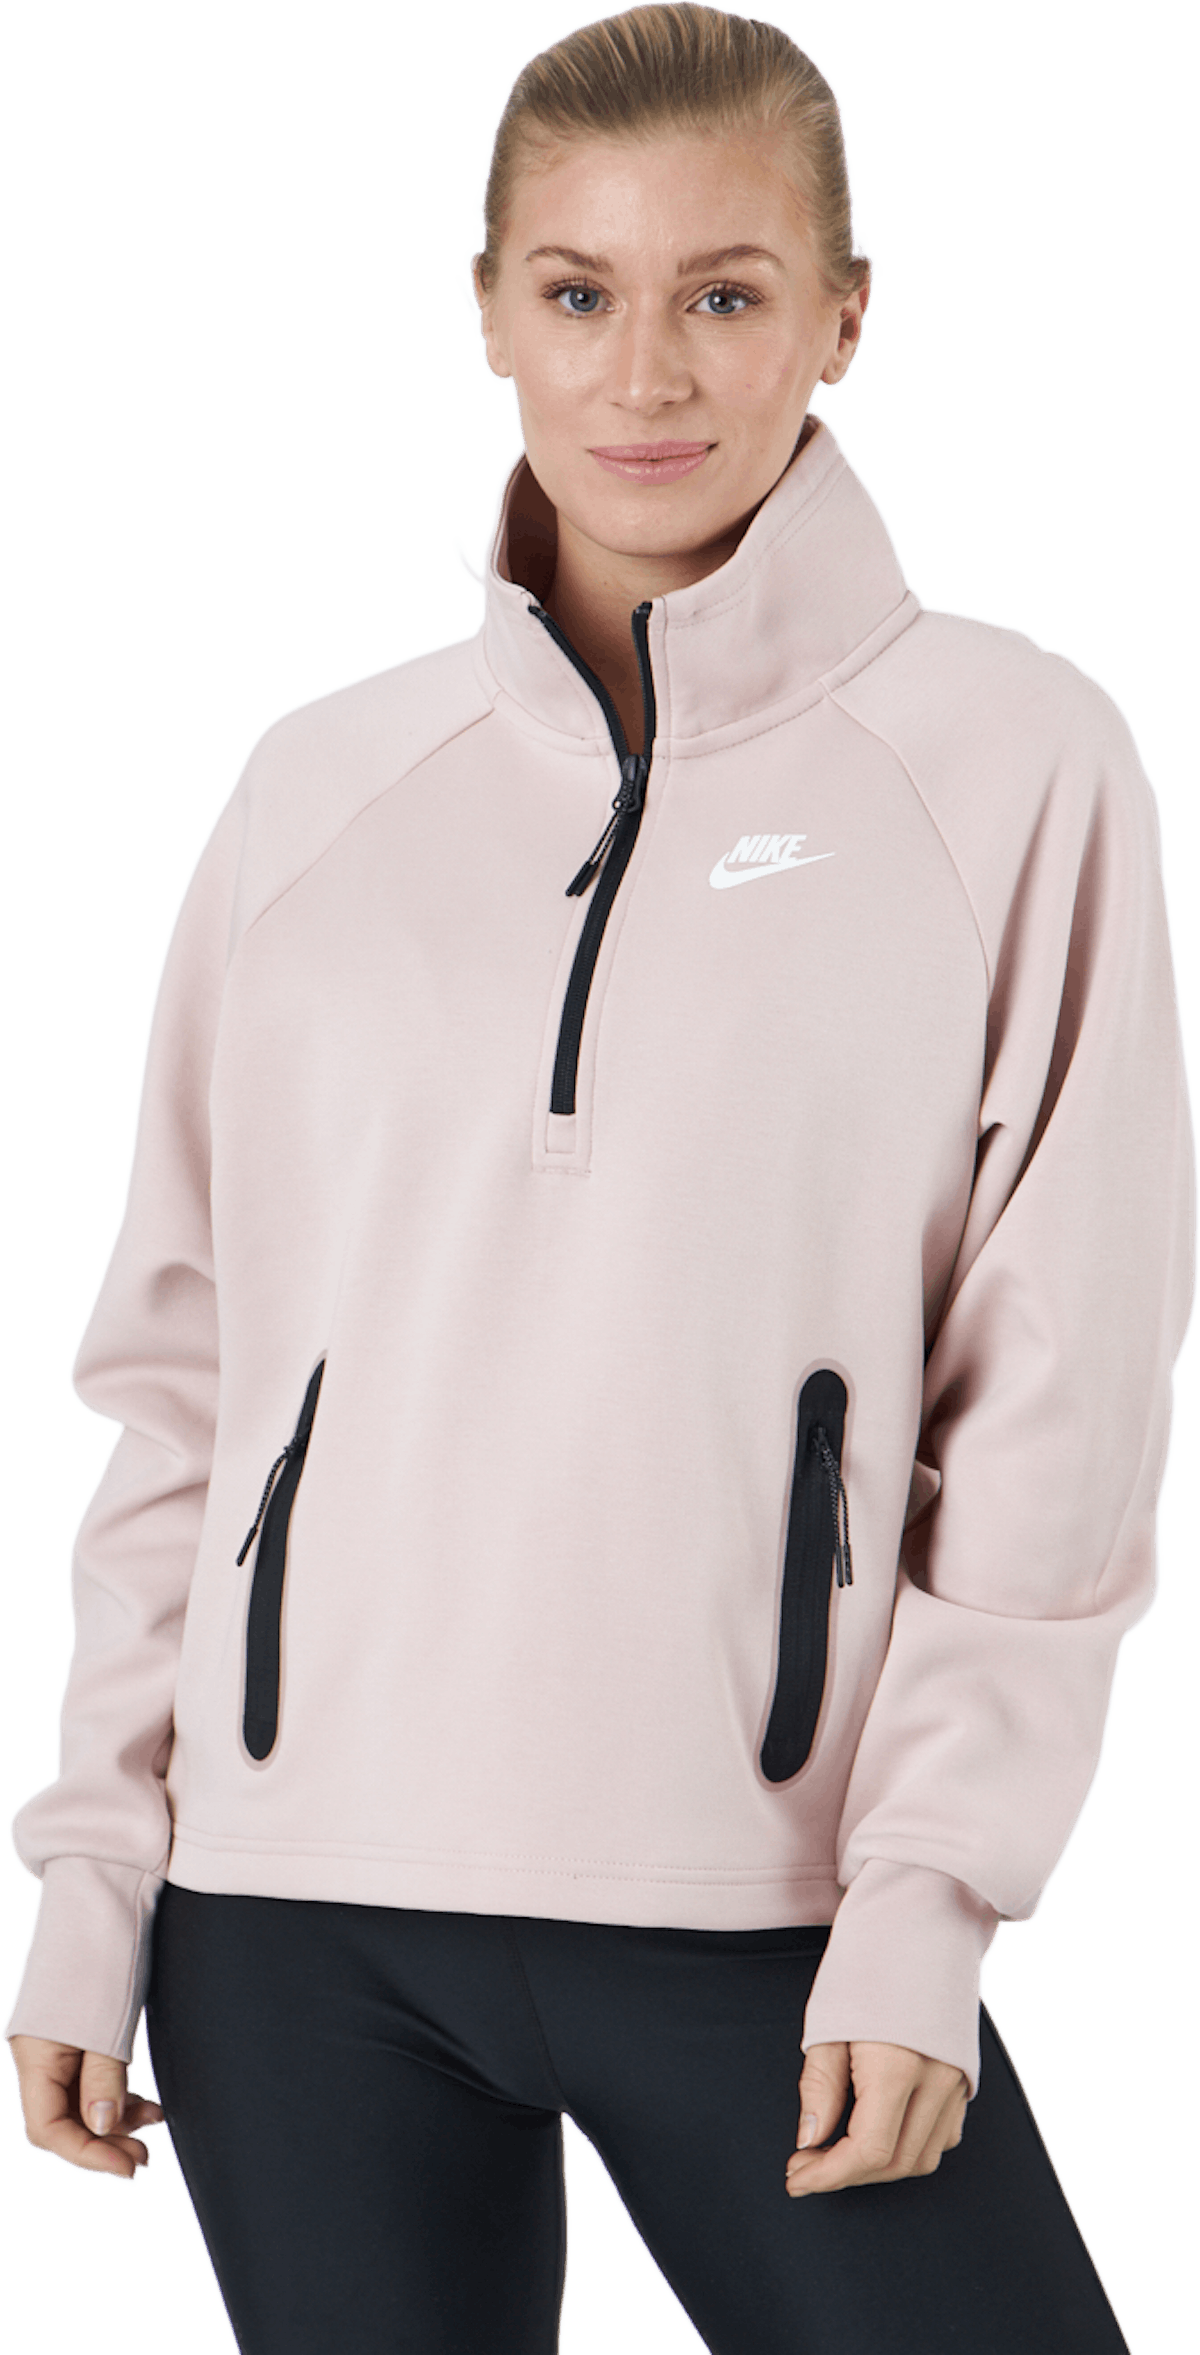 Nike Sportswear Tech Fleece Wo Pink Oxford/white | The best sport ...